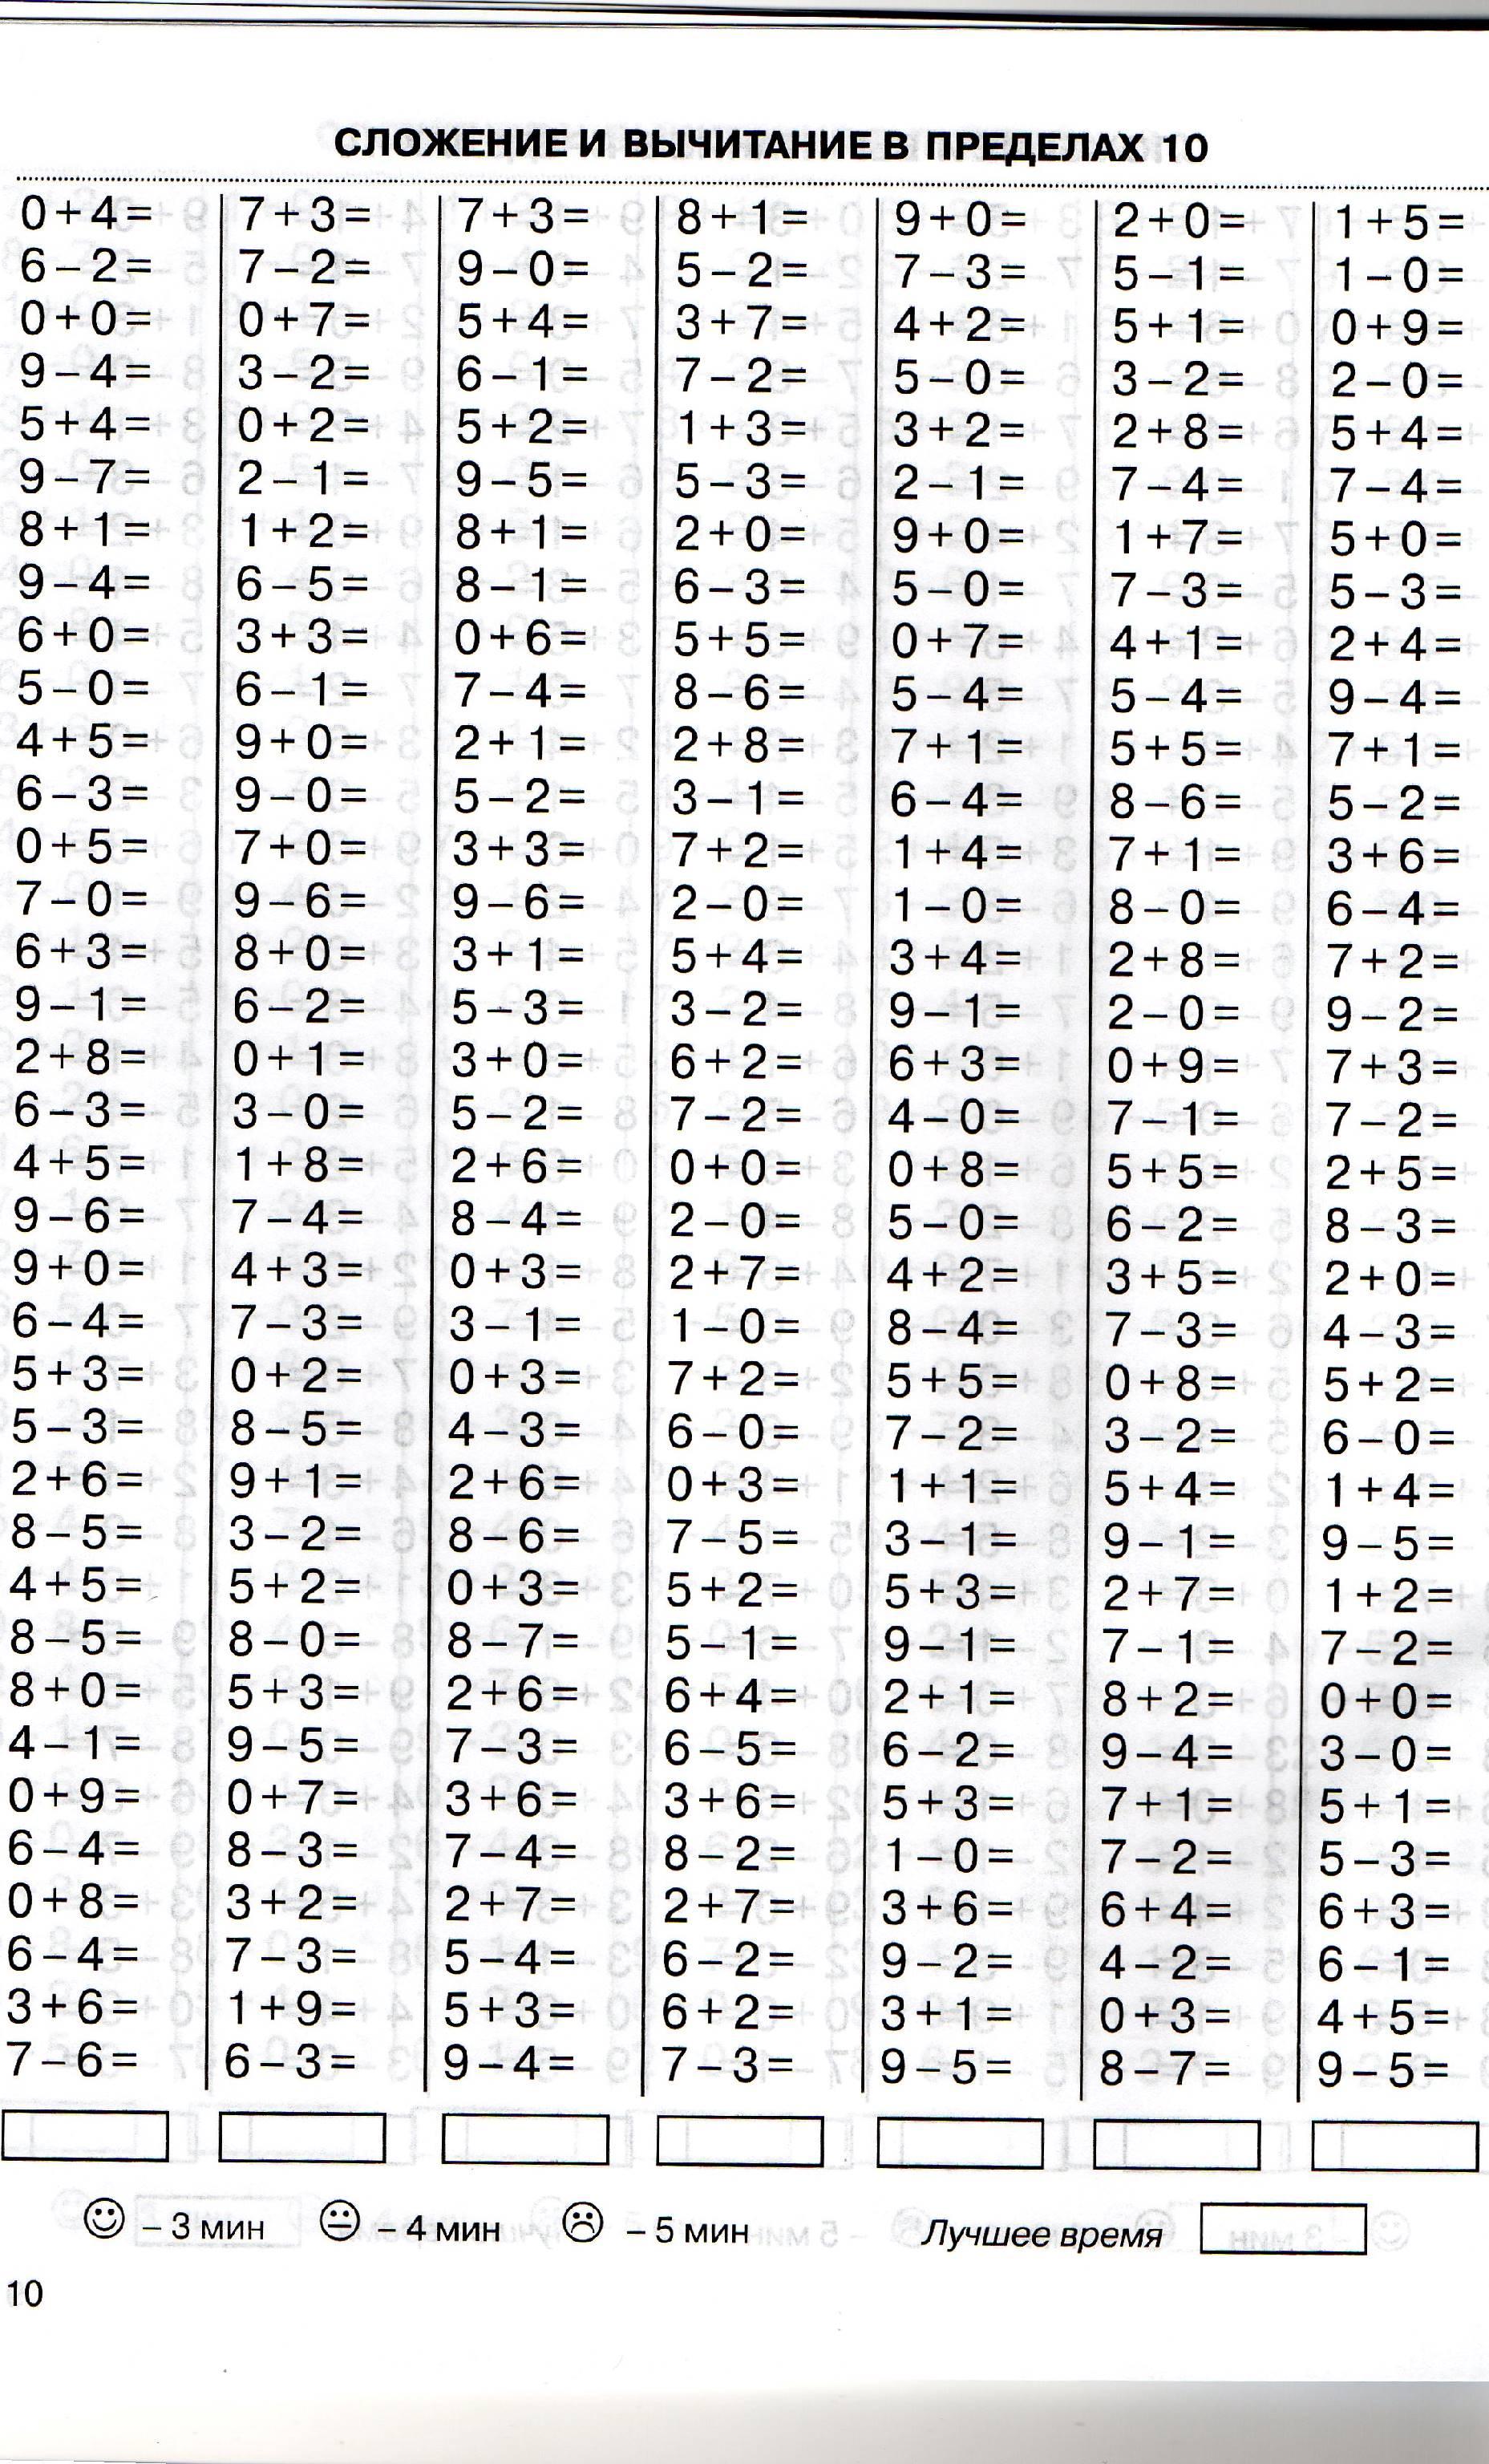 Математика примеры до 20 1 класс распечатать. Таблица сложения и вычитания до 10 тренажер. Отработка сложения и вычитания в пределах 20. Тренажер по сложению и вычитанию до 20. Таблица сложения и вычитания до 20 тренажер.